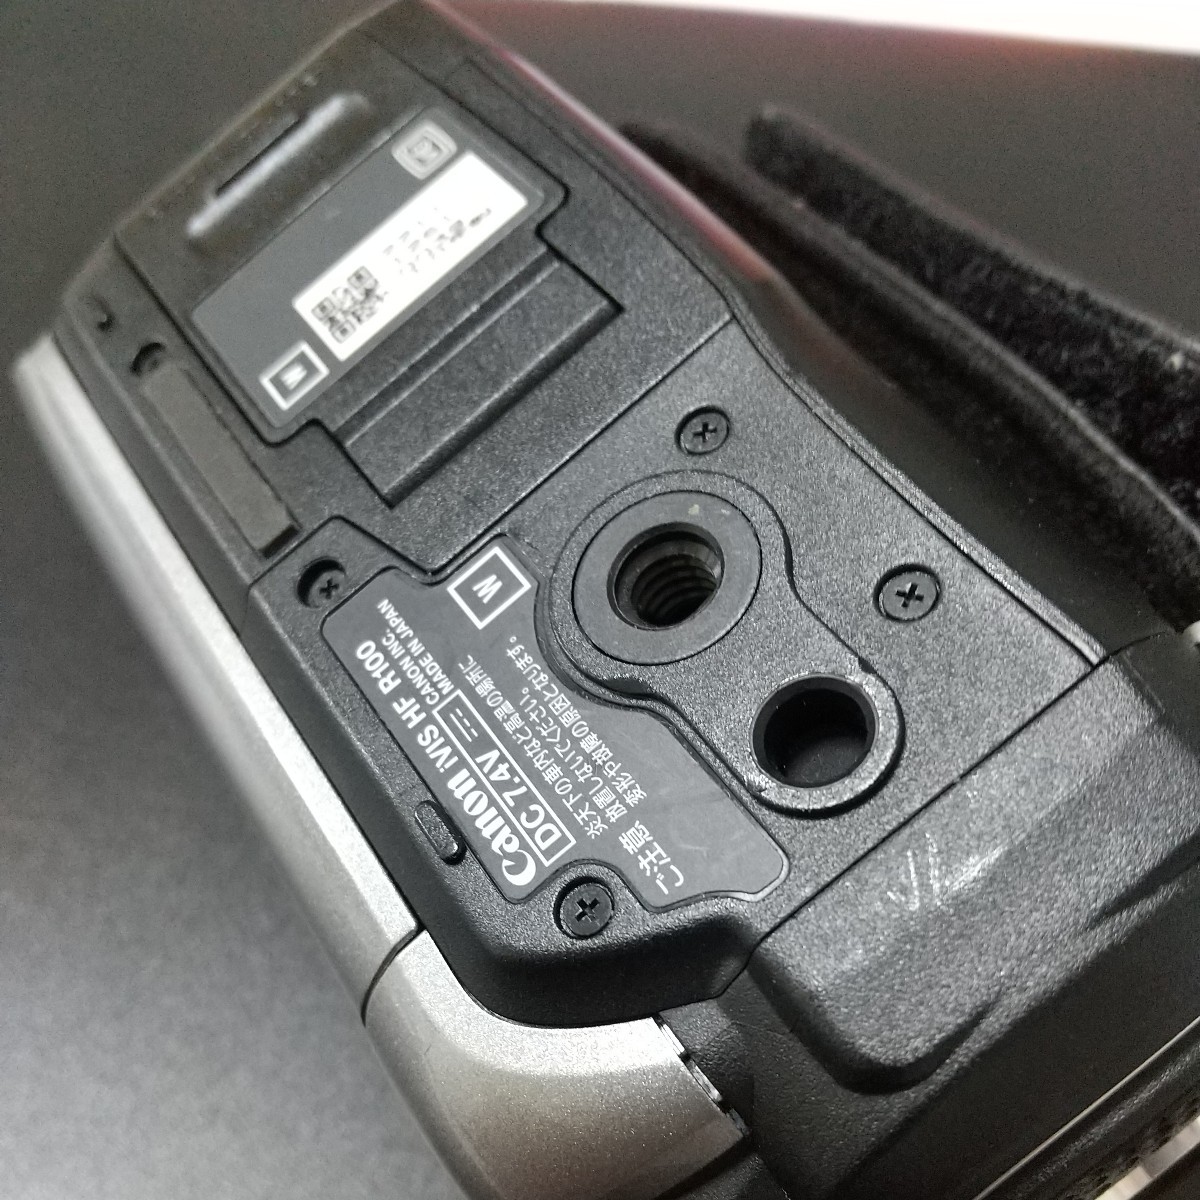 Canon・ iVIS HF R100・ビデオカメラ バッテリーチャージャー & バッテリー & 32GBSDカード付き 作動良好 キャノン キヤノン CANON_画像7